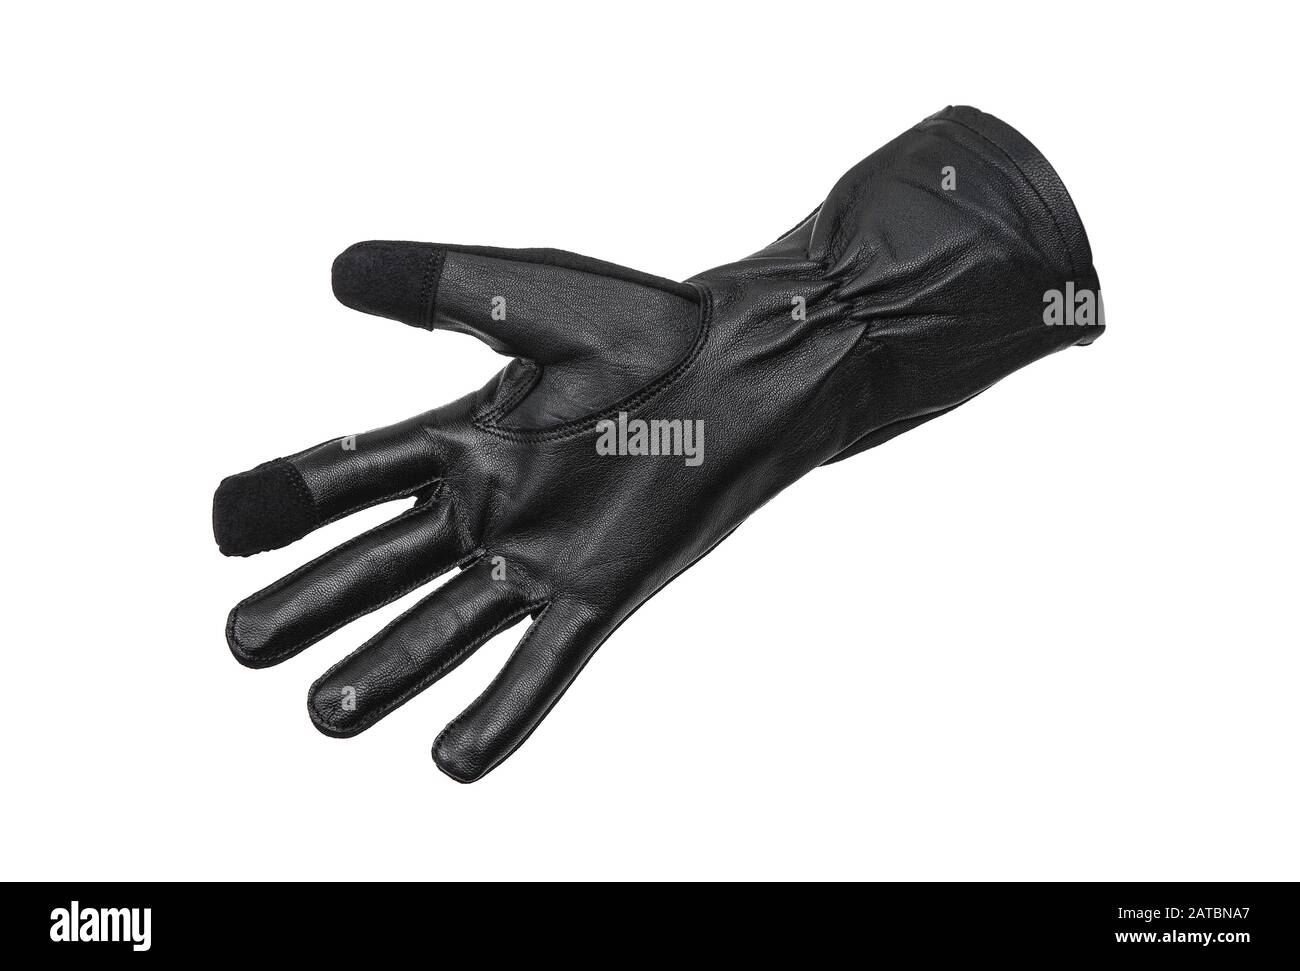 Les gants en tissu noir avec inserts en cuir s'isolent sur un fond blanc.  Moufles pour le travail et le quotidien, pour les militaires et les  travailleurs. Poignet Photo Stock - Alamy